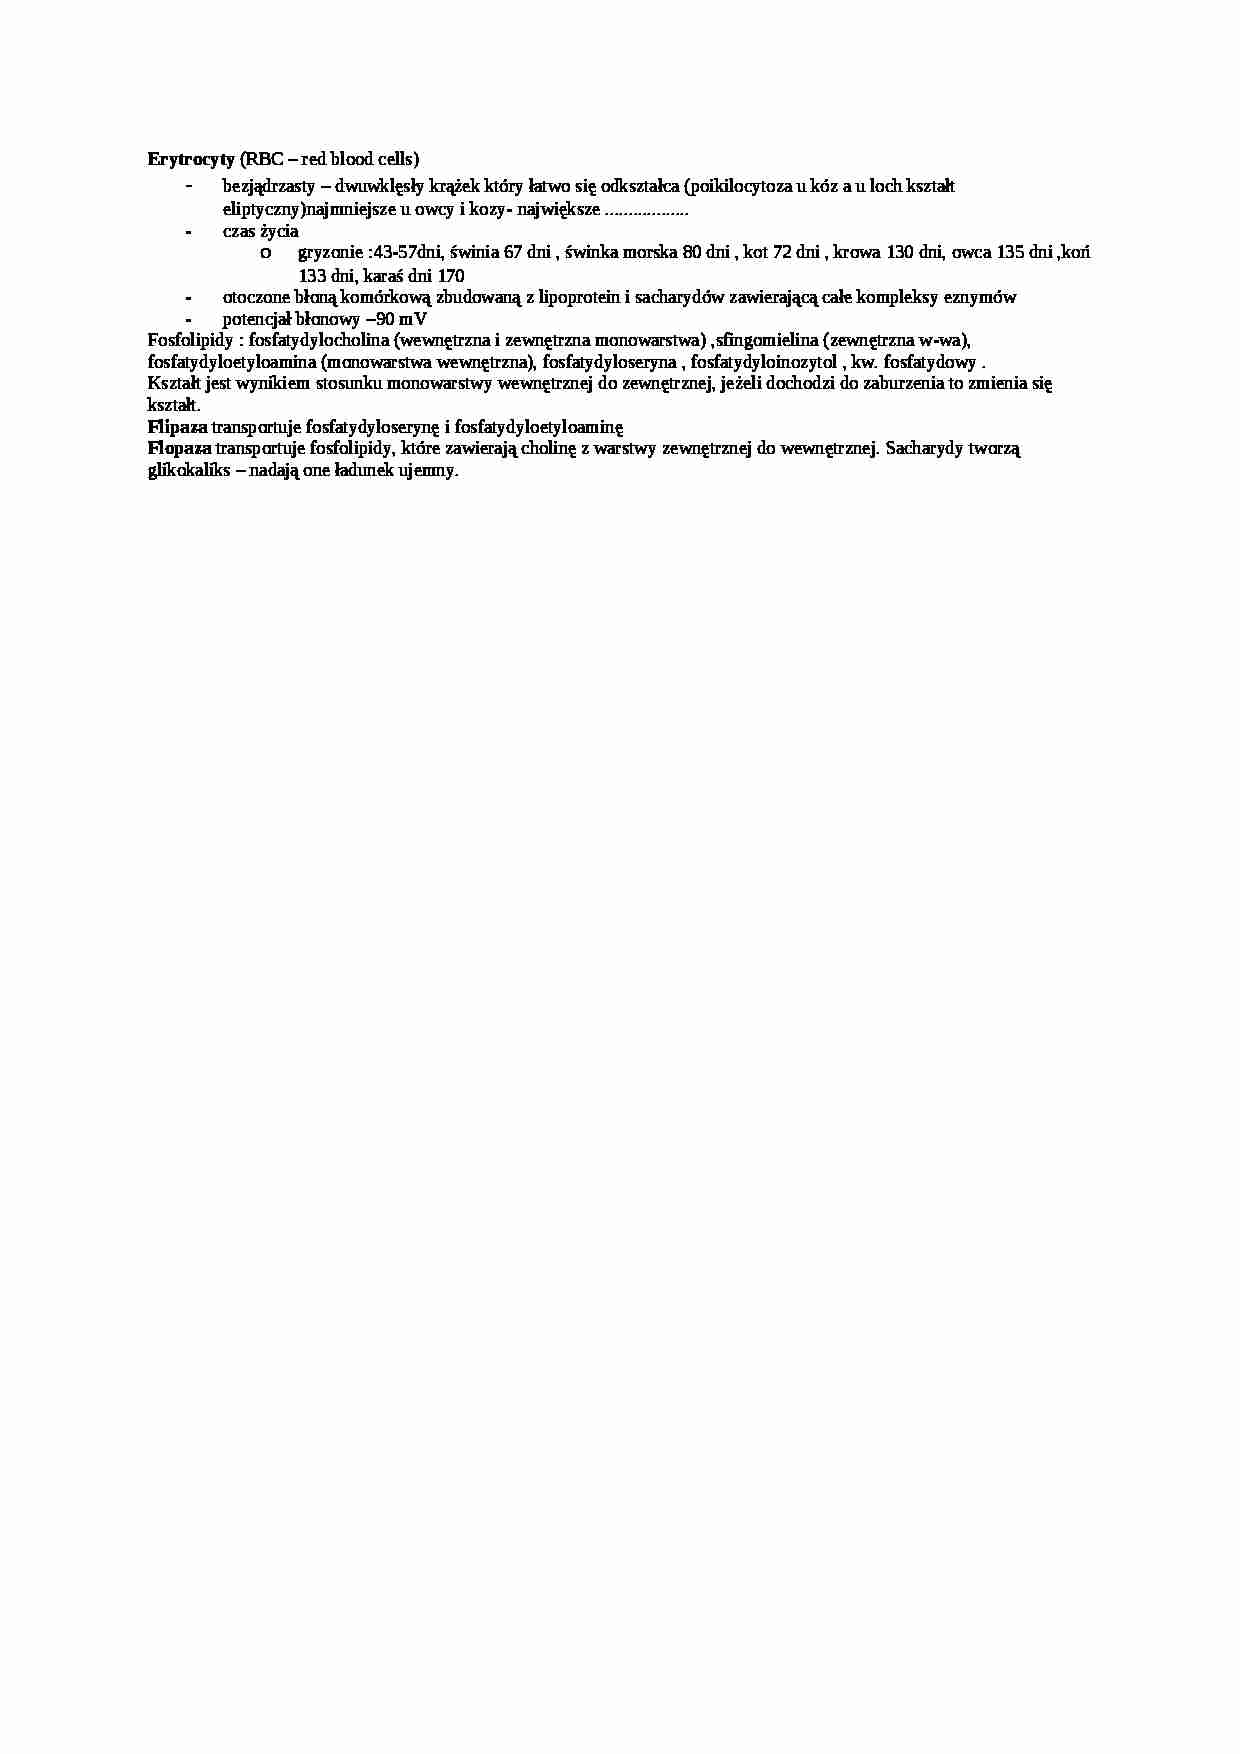 Erytrocyty - wykład, sem  IV - strona 1